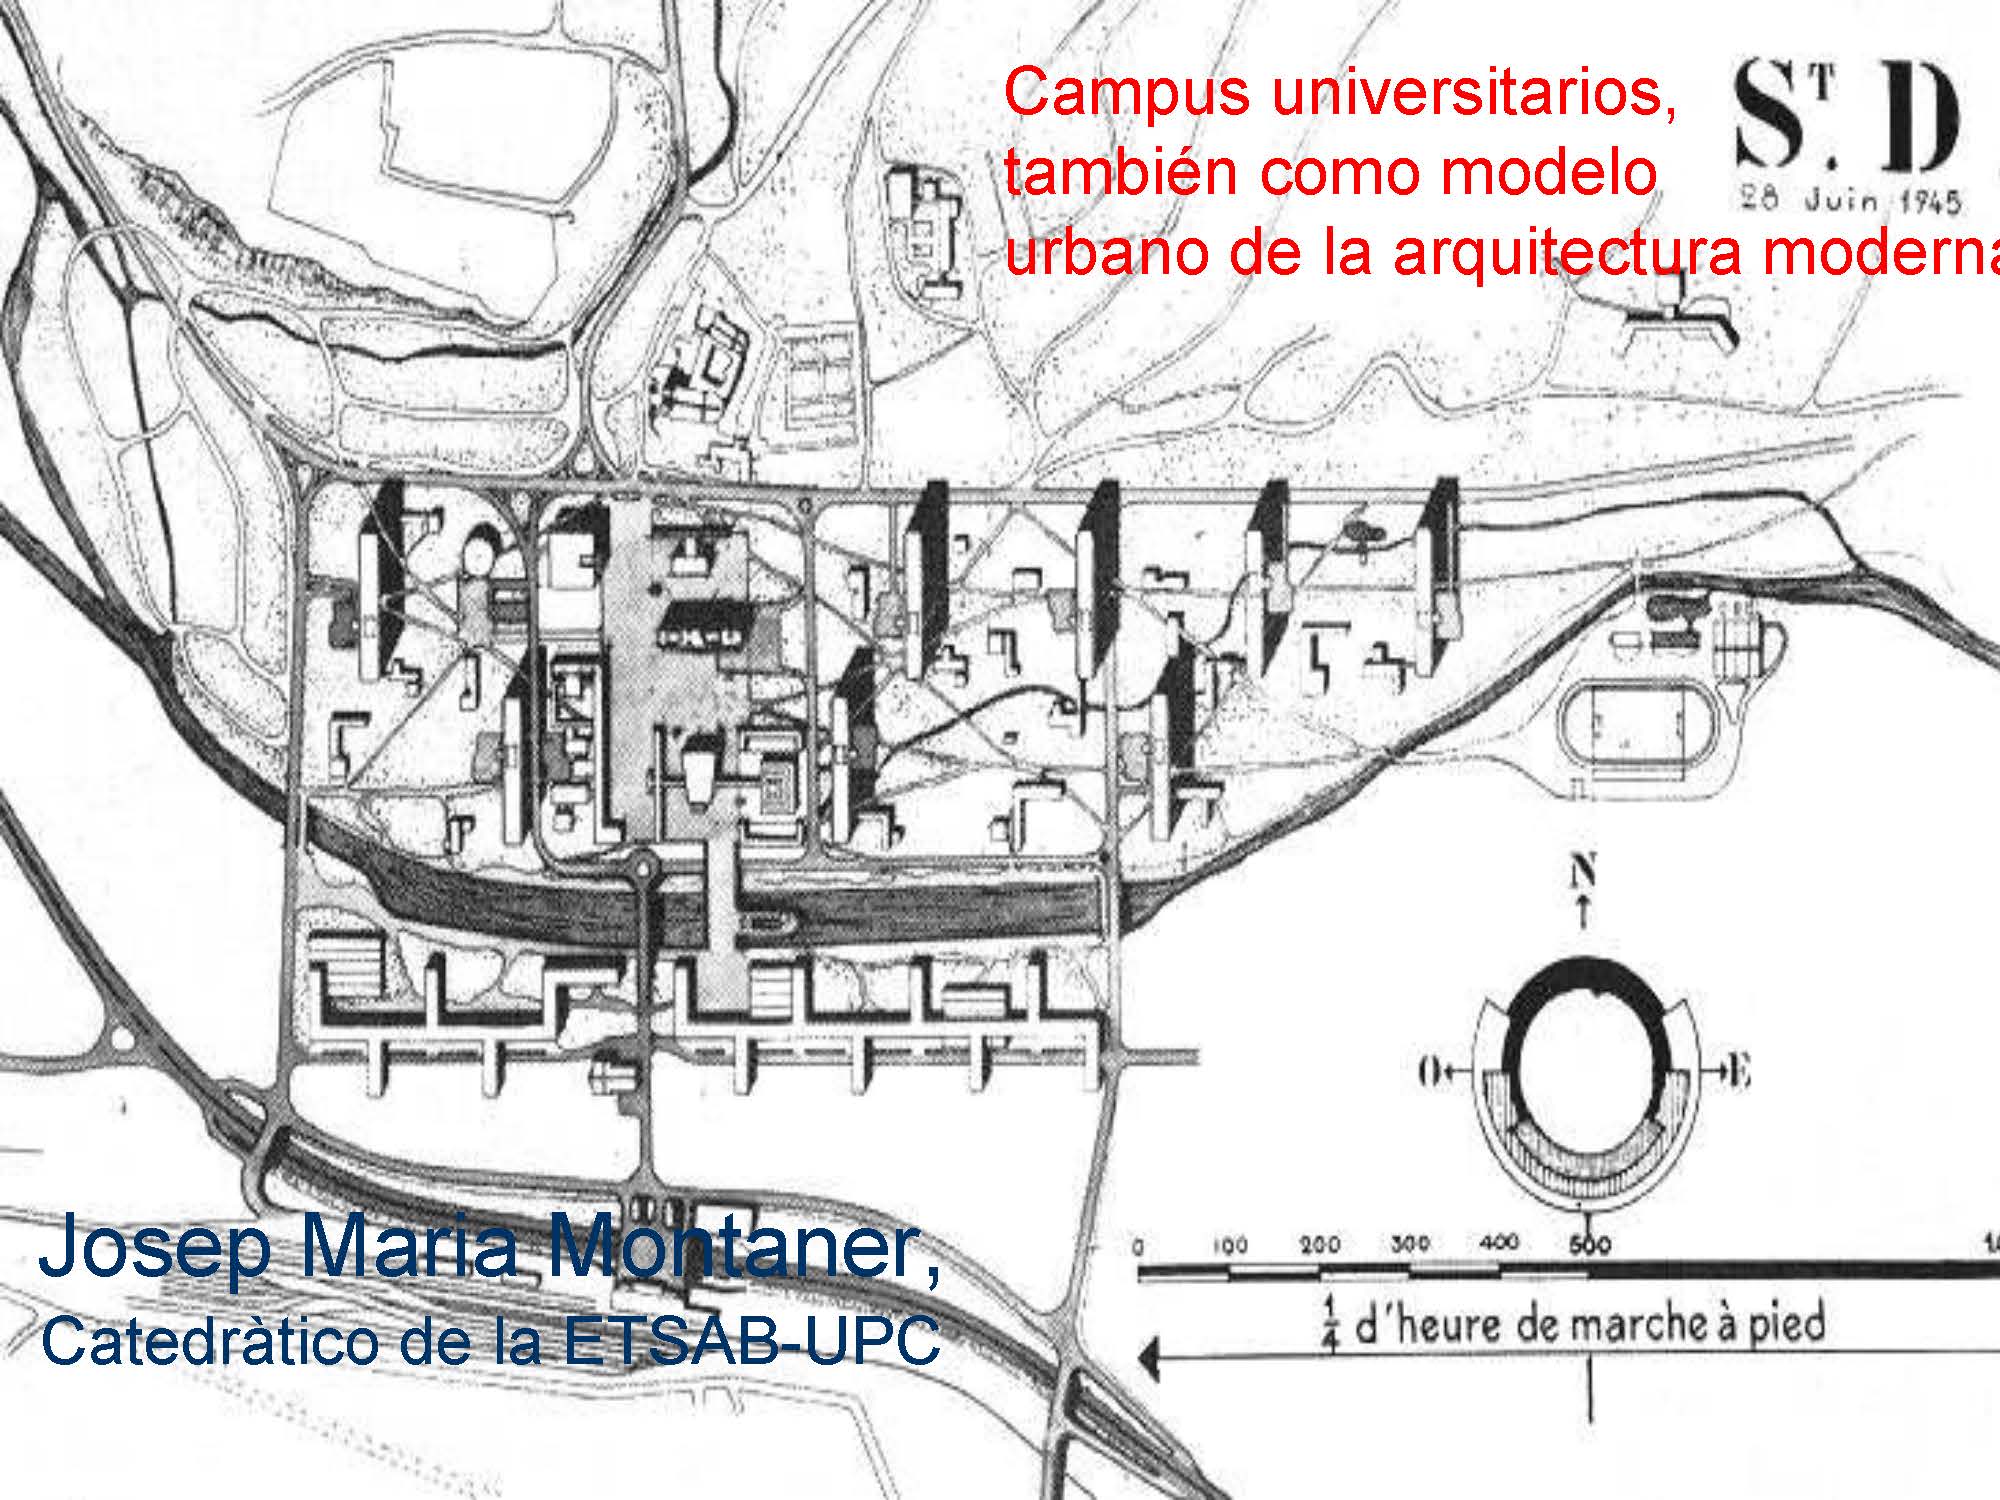 Campus universitarios, tambien como modelo urbano de la arquitectura moderna